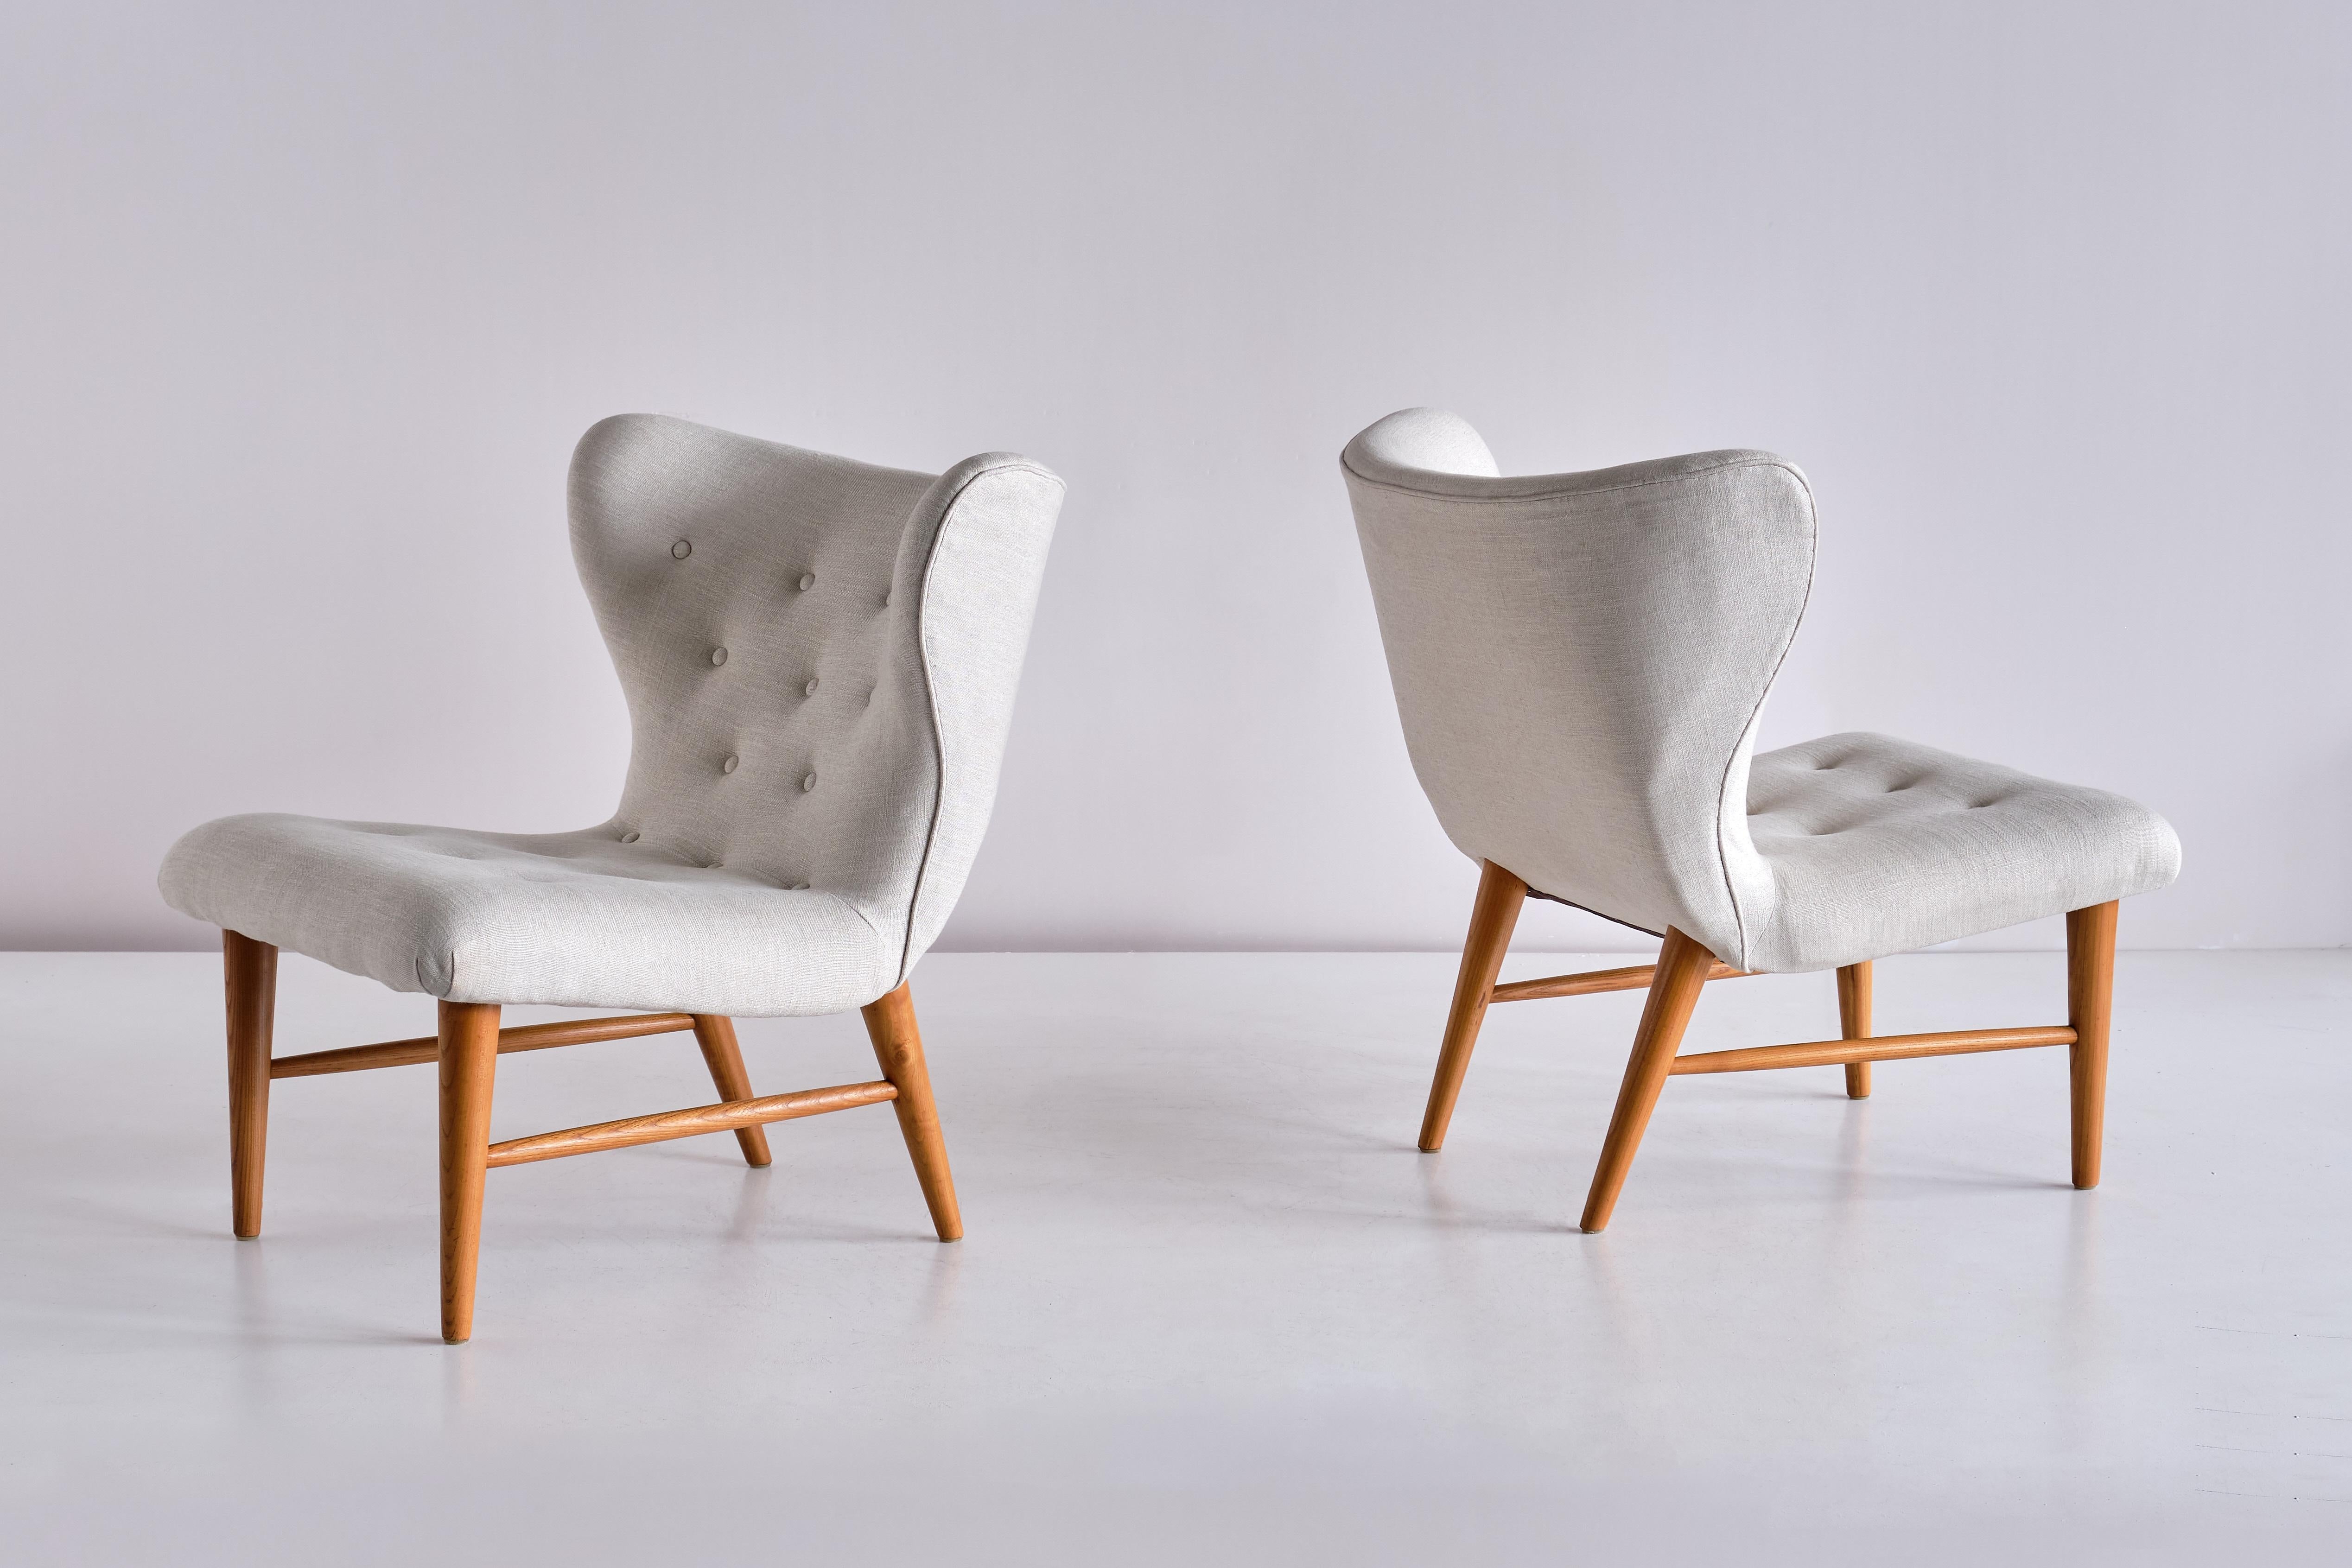 Dieses seltene Paar Loungesessel wurde von Eric Bertil Karlén entworfen und von seiner Firma Rumsinteriör in den 1940er Jahren in Schweden hergestellt. Die elegante Form des Designs wird durch die geknöpfte, flügelförmige Rückenlehne und Sitzfläche